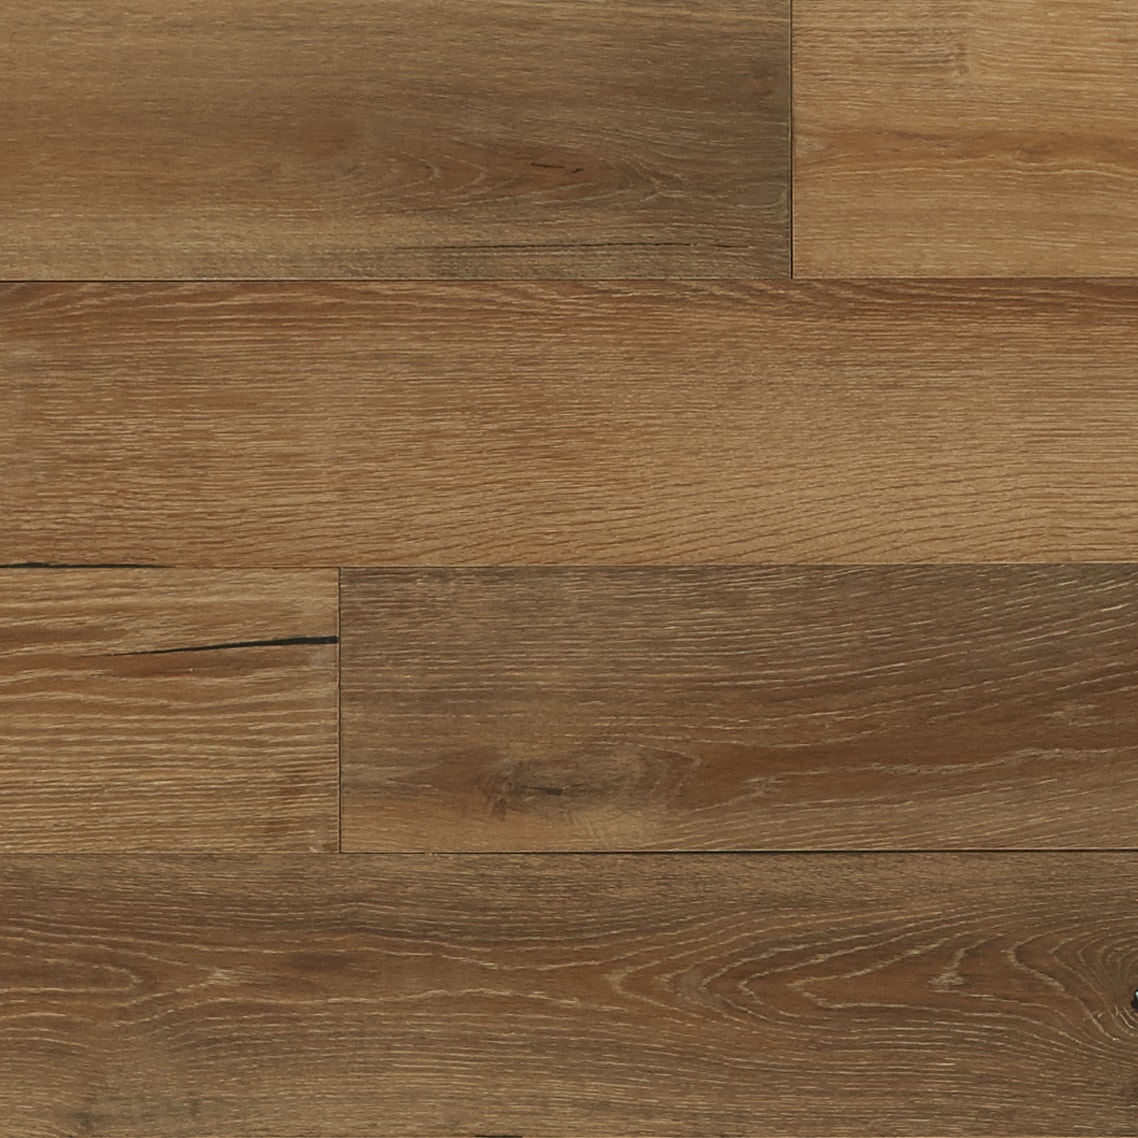 Bruce Nature Of Wood Premium Golden Oak, 7 Inch Oak Hardwood Flooring